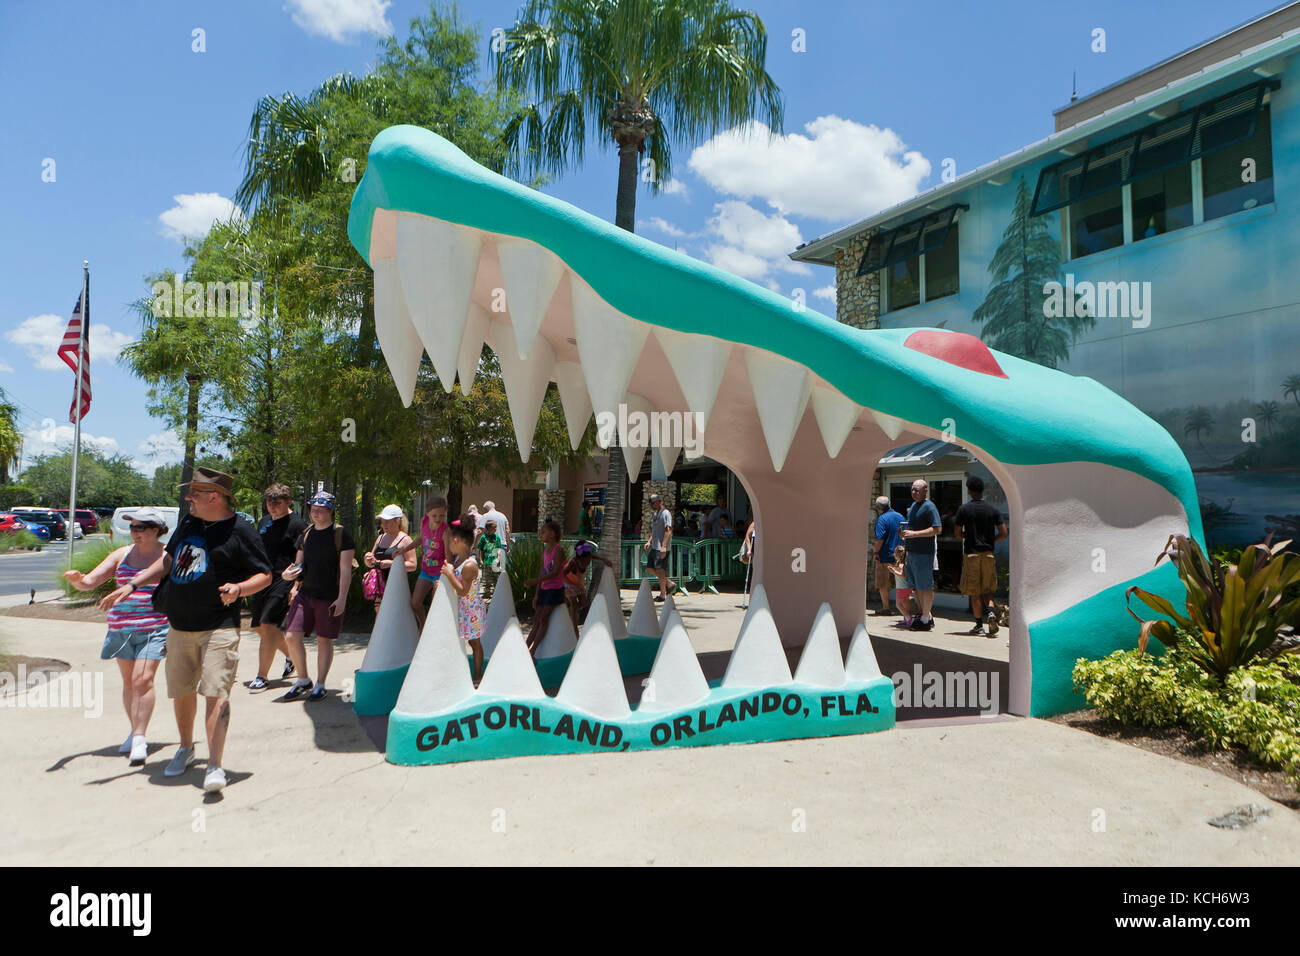 Entrada - Gatorland Orlando, Florida, EE.UU. Foto de stock